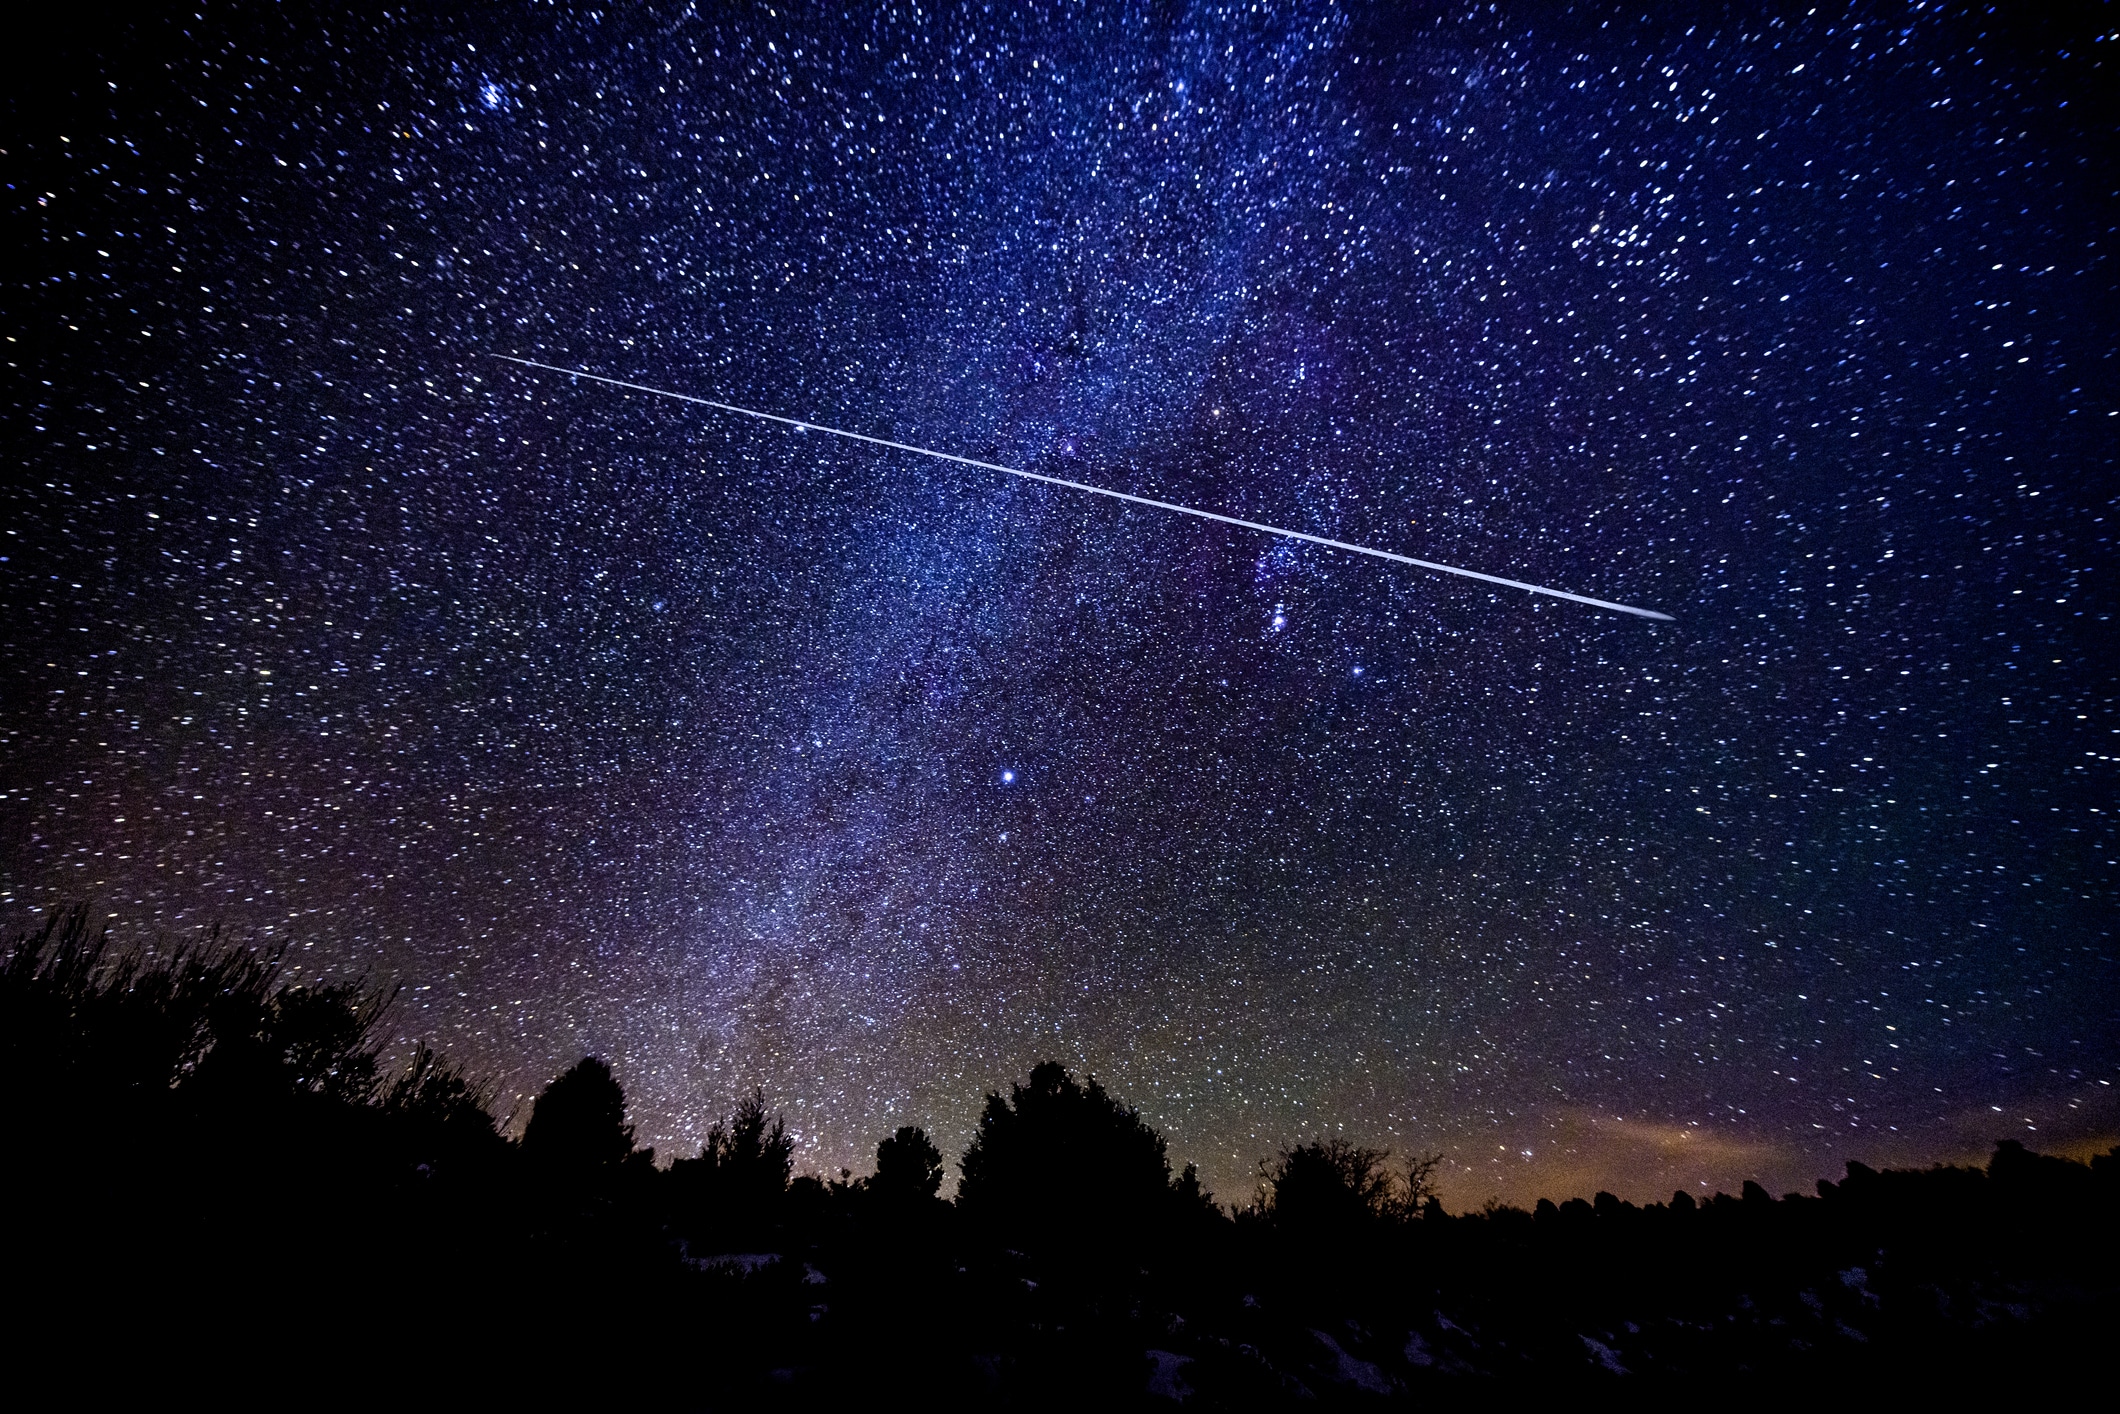 Vannacht veel vallende sterren door grote meteorenzwerm